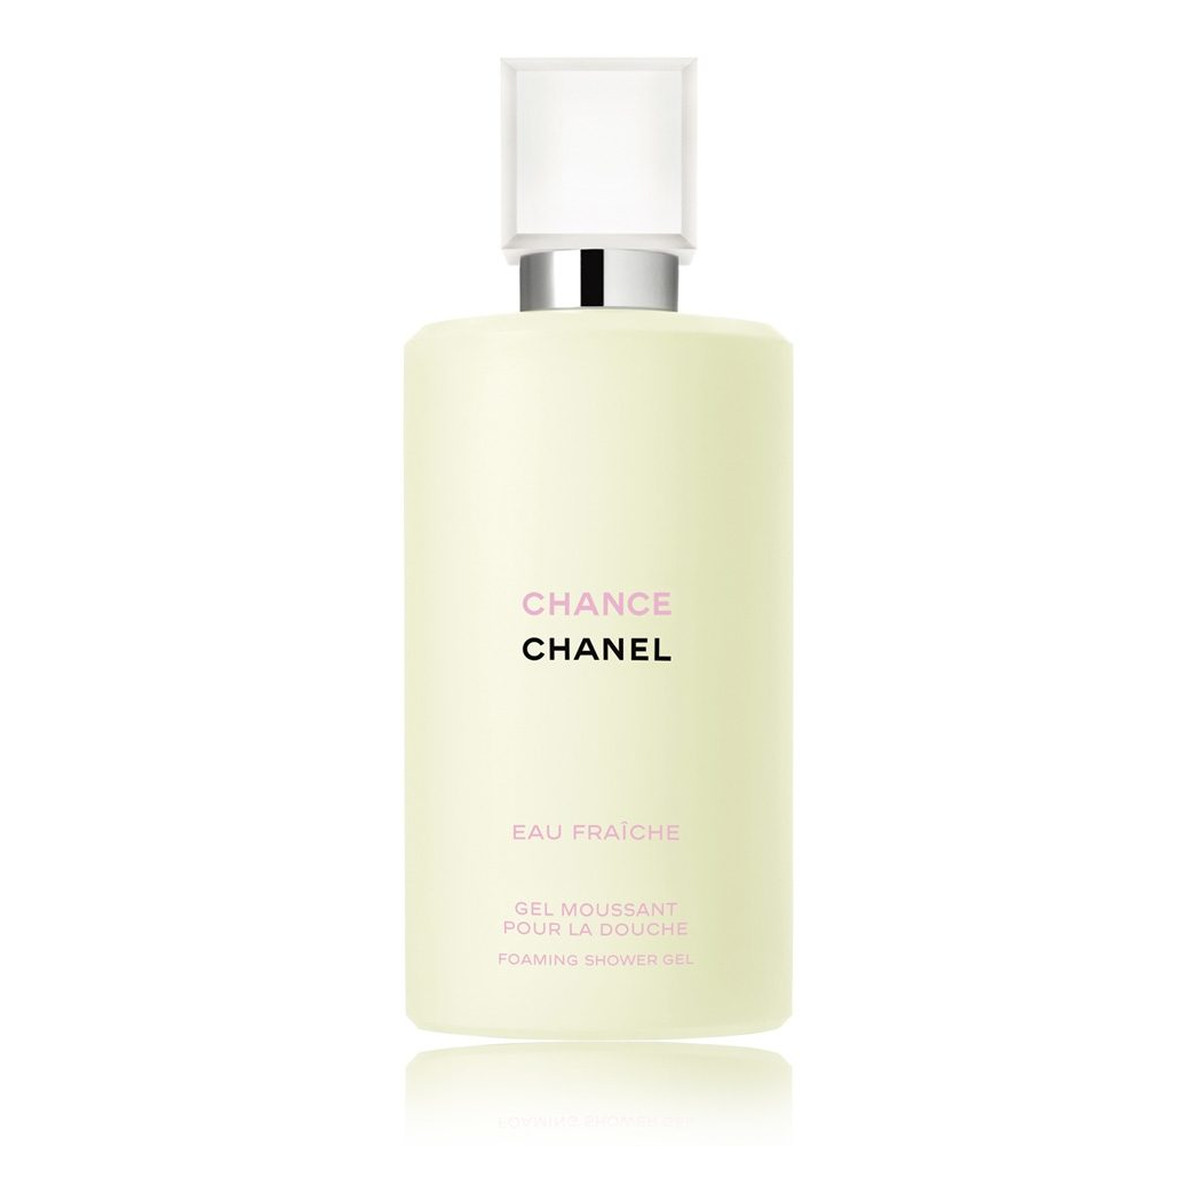 Chanel Chance eau fraiche żel pod prysznic 200ml